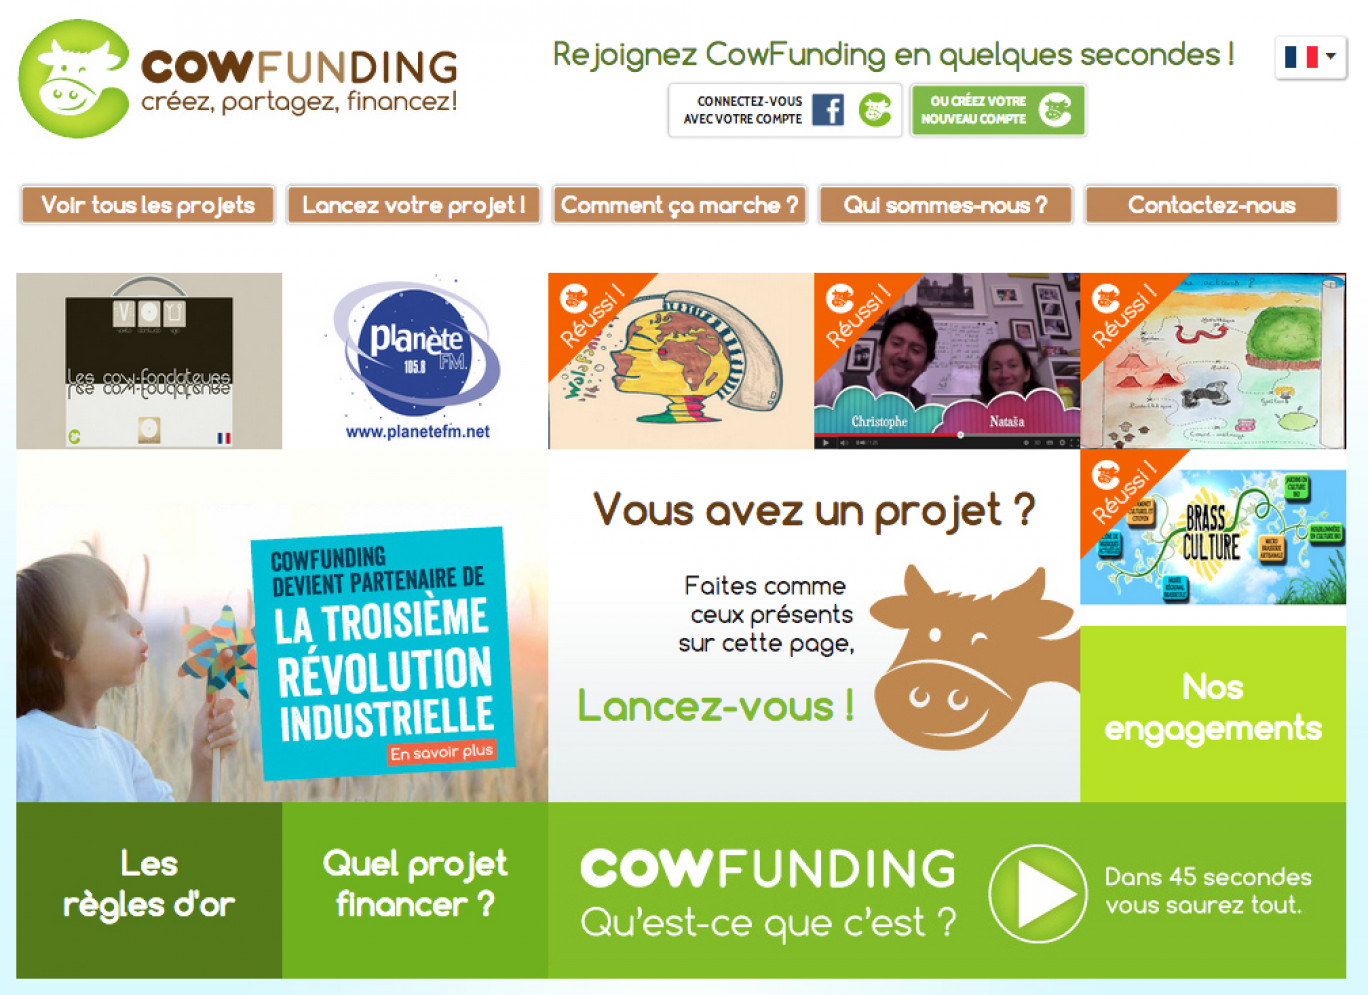 Le site Cowfunding est très simple de fonctionnement, il donne les grandes clés pour réussir un projet de financement participatif. 25 % des projets soutenus sur le site sont made in Nord-Pas-De-Calais.